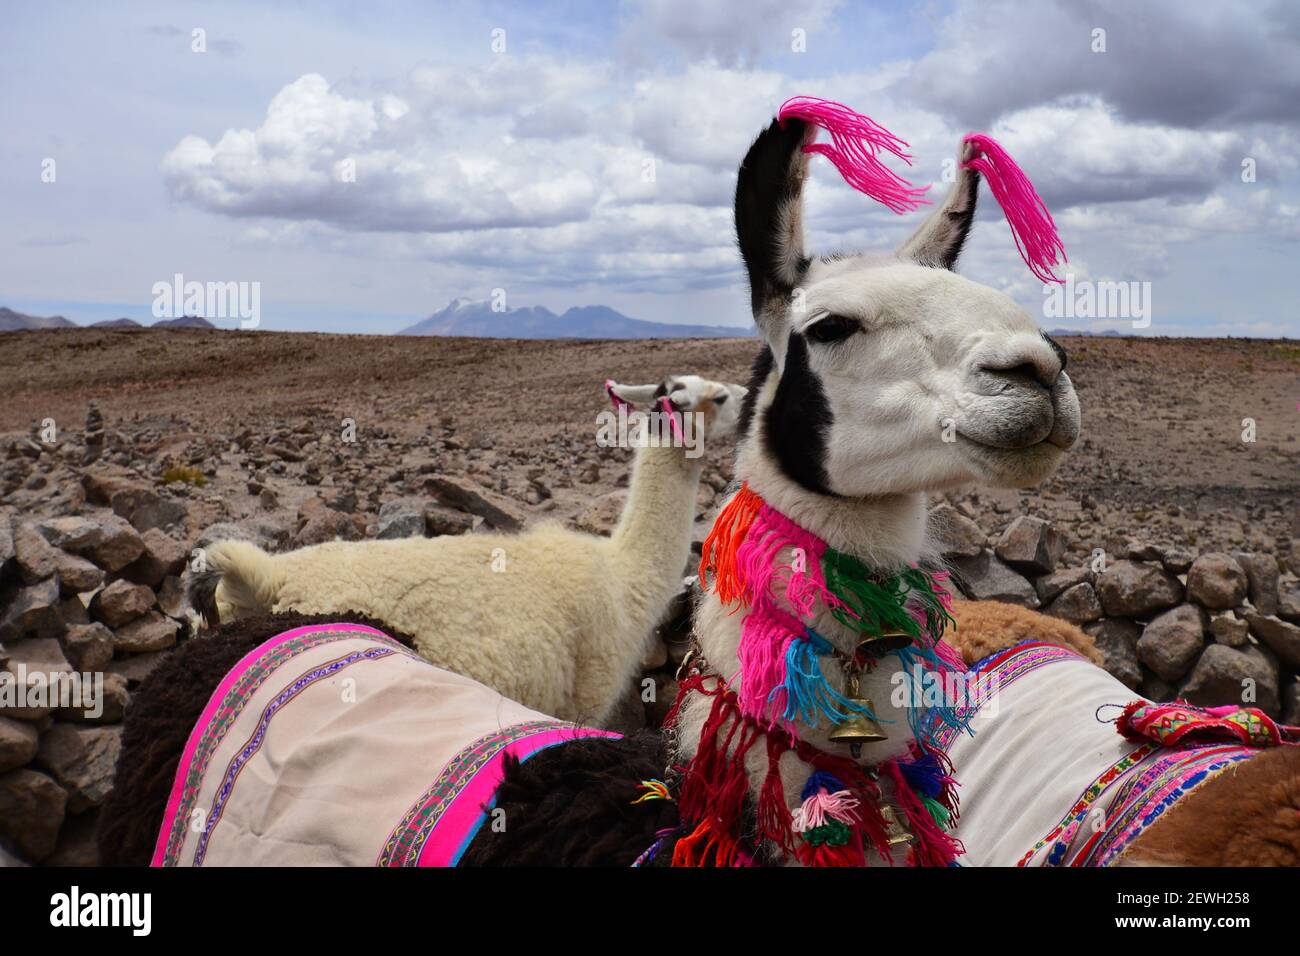 Llama (lama glama) décorée de laine colorée. Environs de Chivay, Pérou Banque D'Images